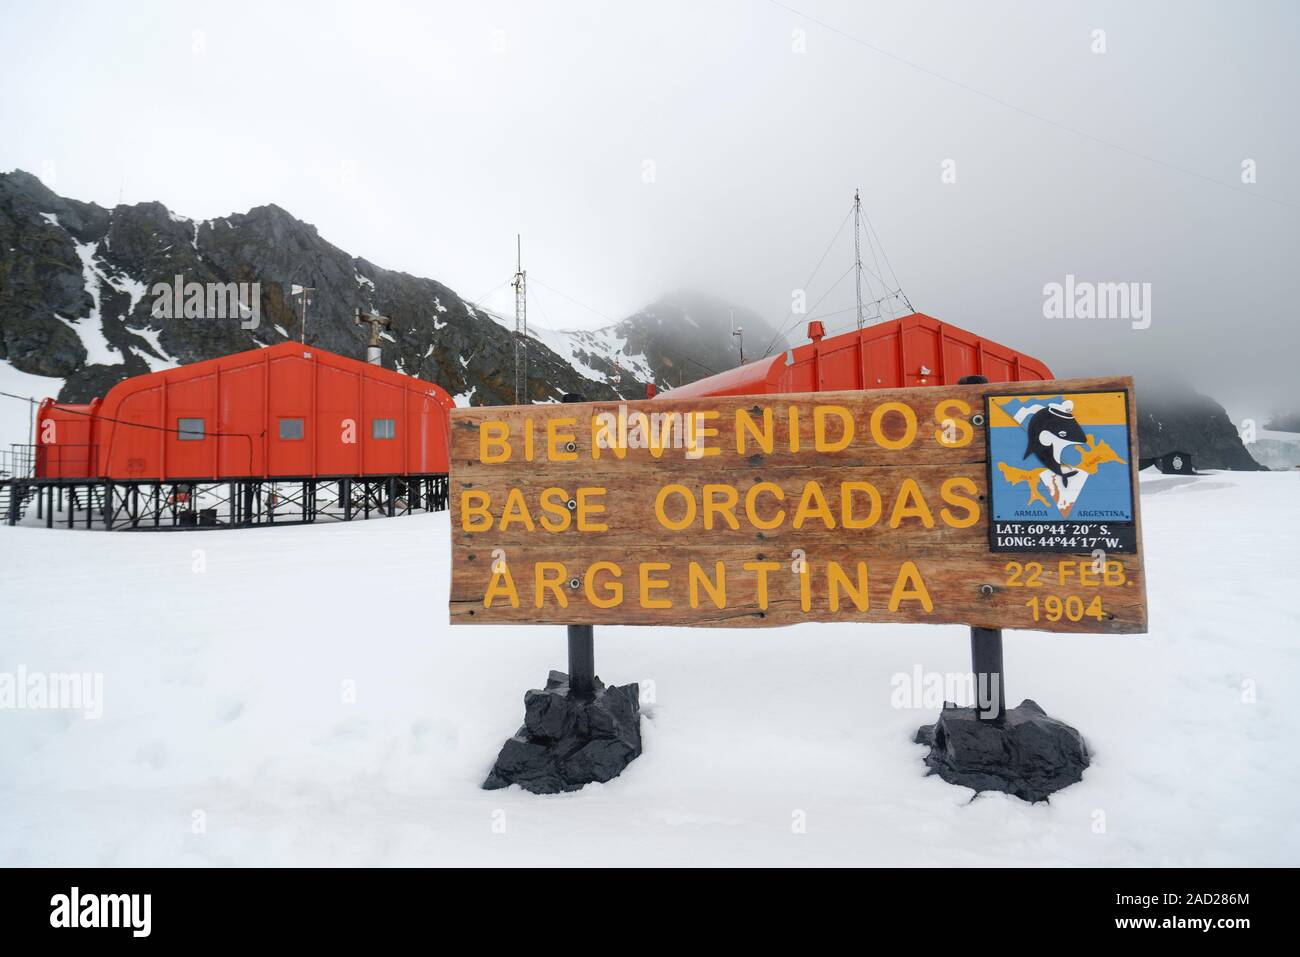 Willkommen anmelden, Argentinische wissenschaftliche Station Basis Orcadas, Laurie Island, South Orkney Inseln, Antarktis Stockfoto